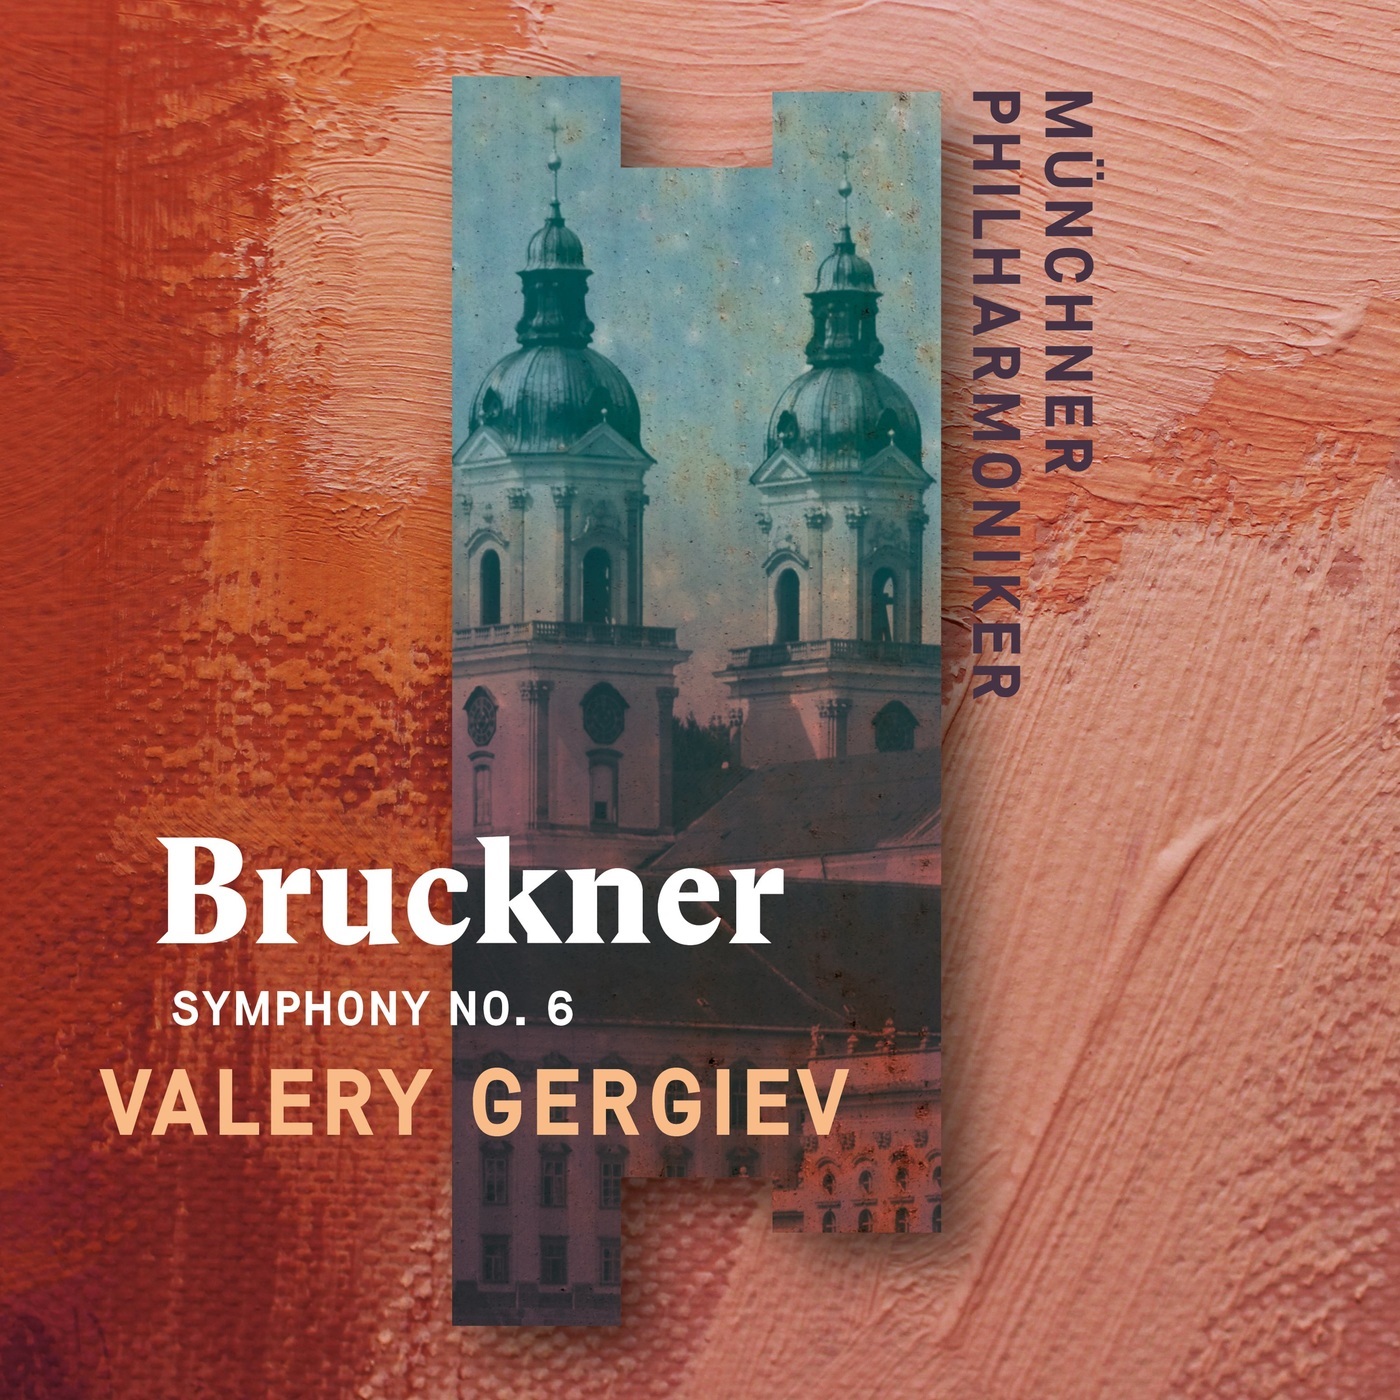 Valery Gergiev & Munich Philharmonic - Bruckner: Symphony No. 6 (2020) [FLAC 24bit/96kHz]